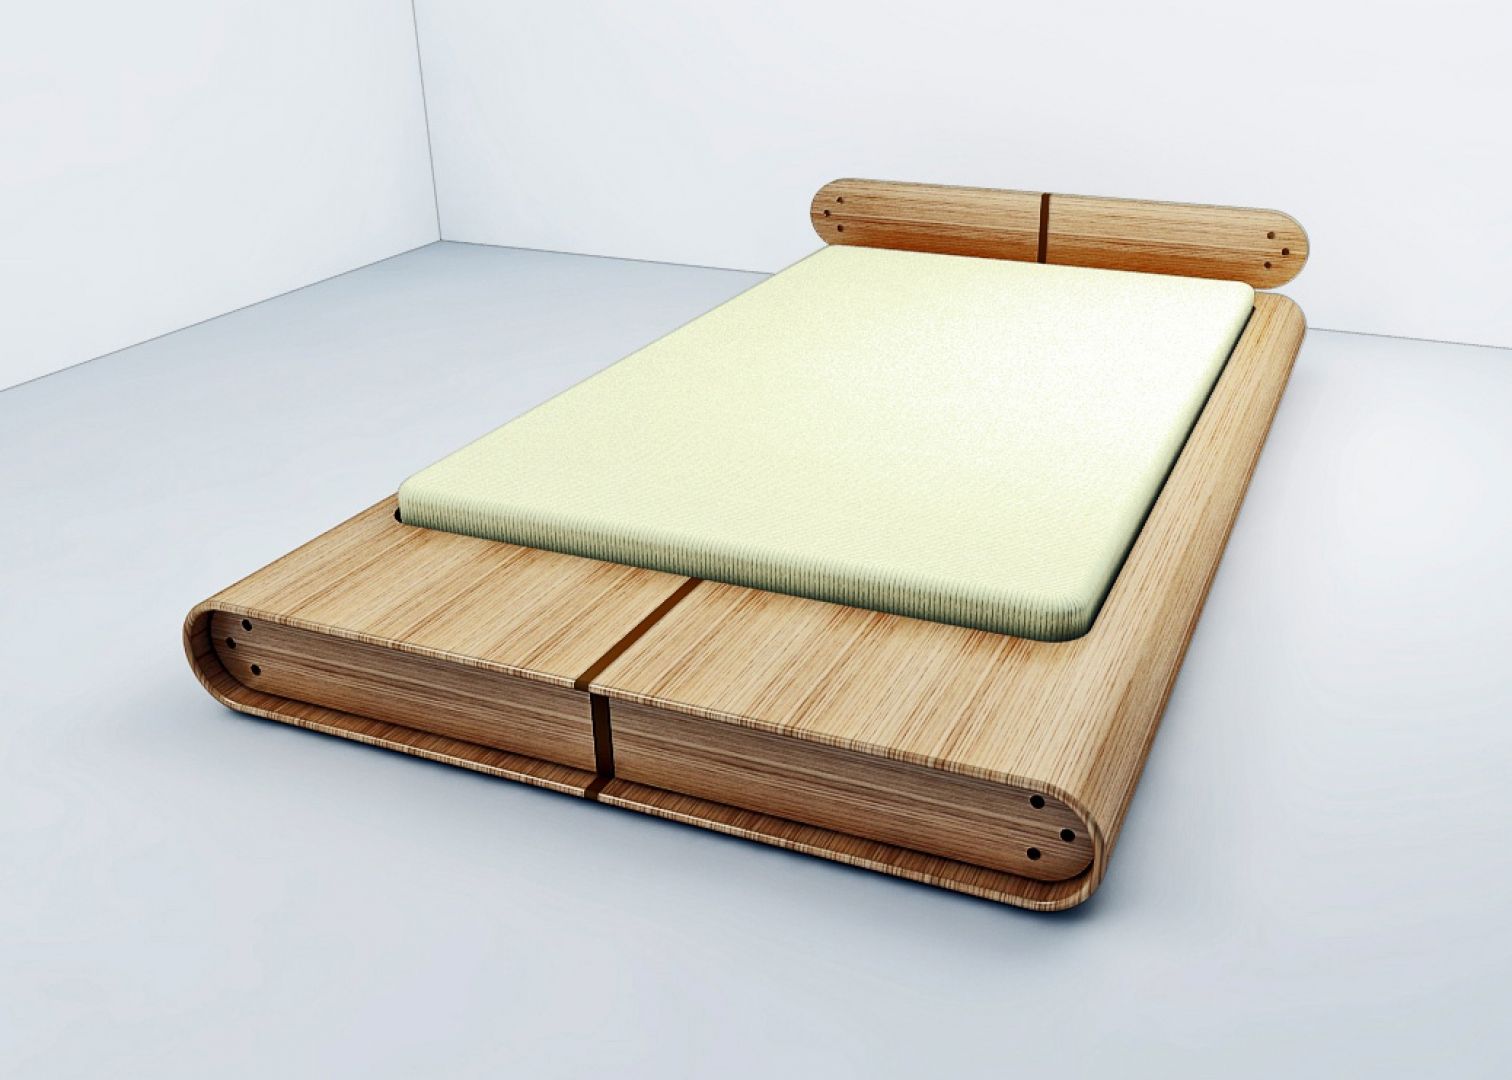 Nowoczesne, minimalistyczne łóżko w każdym calu. Projekt Tomasza Wagnera
Fot. Archiwum